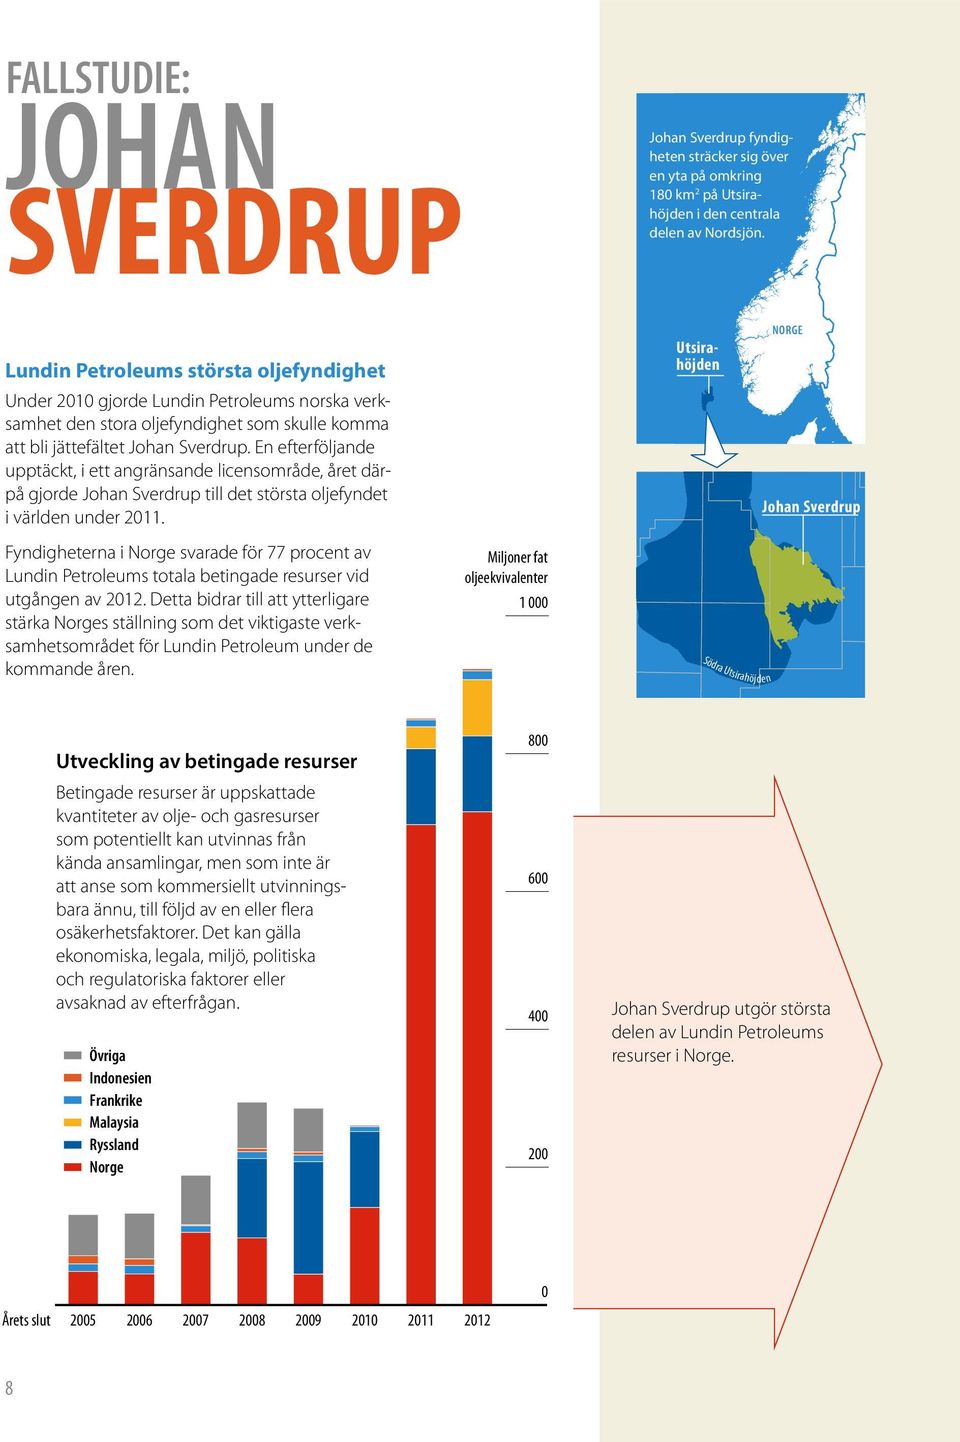 En efterföljande upptäckt, i ett angränsande licensområde, året därpå gjorde Johan Sverdrup till det största oljefyndet i världen under 2011.